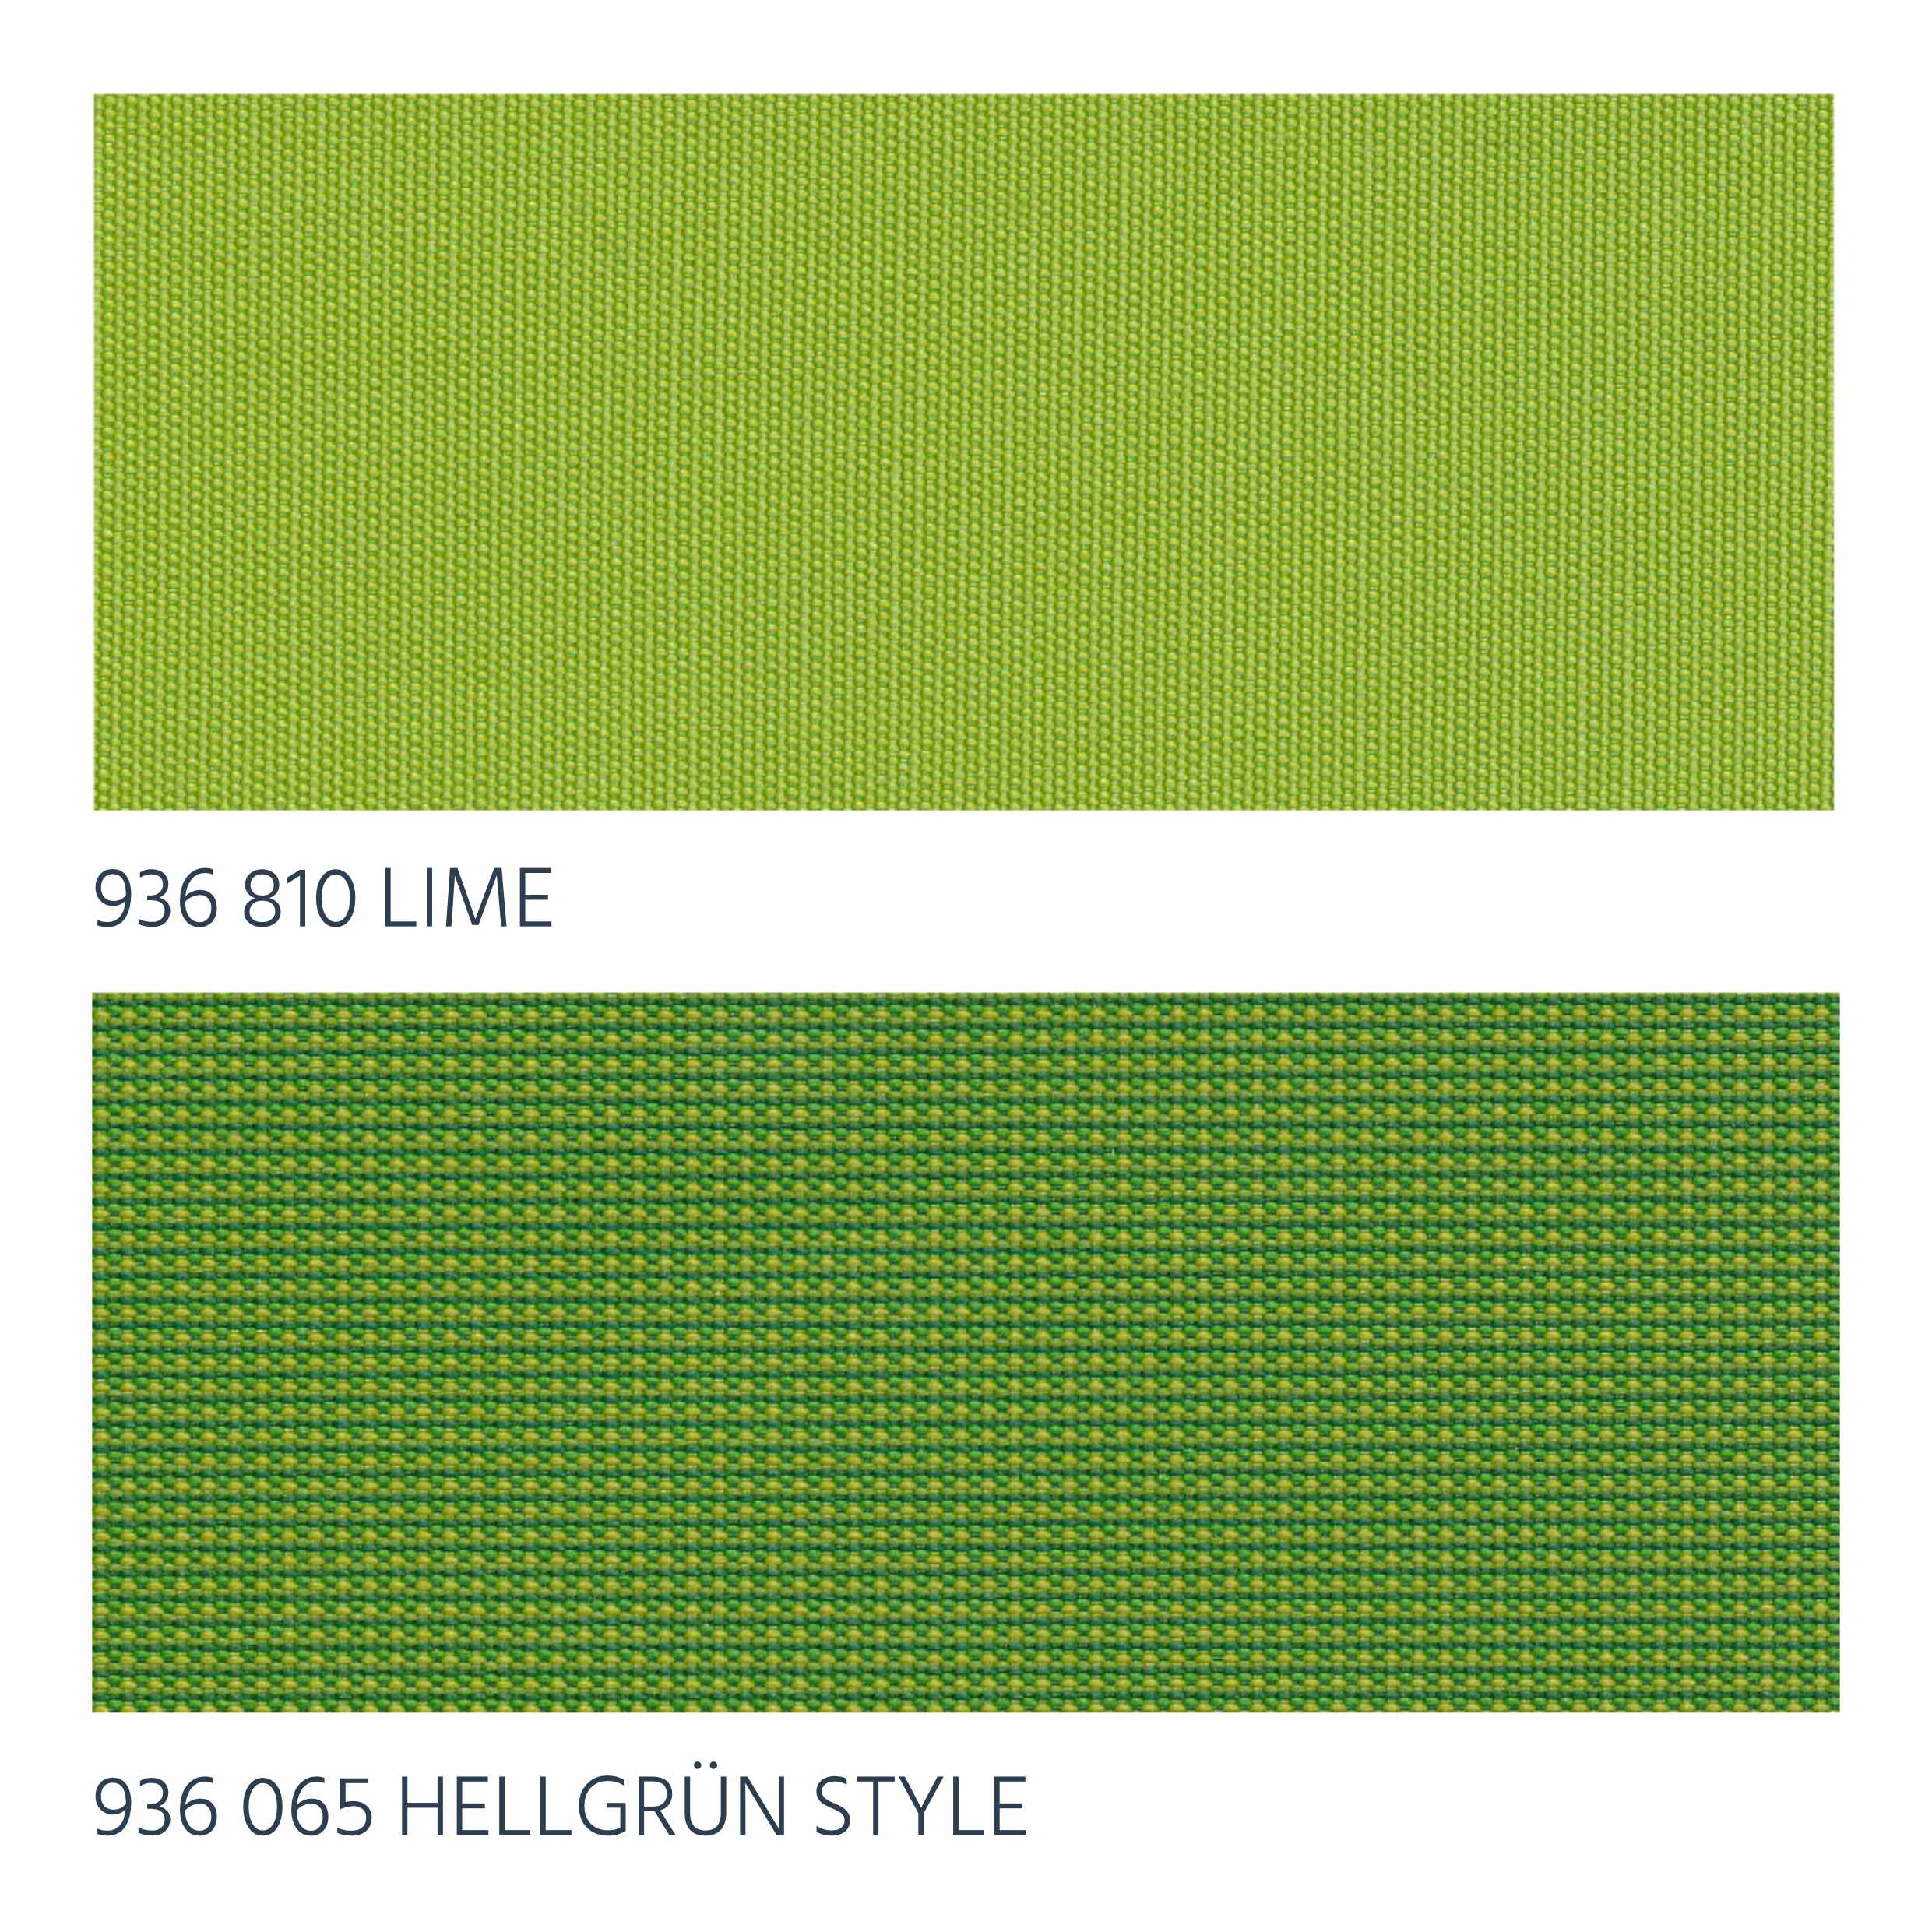 Lime & Hellgrün Style